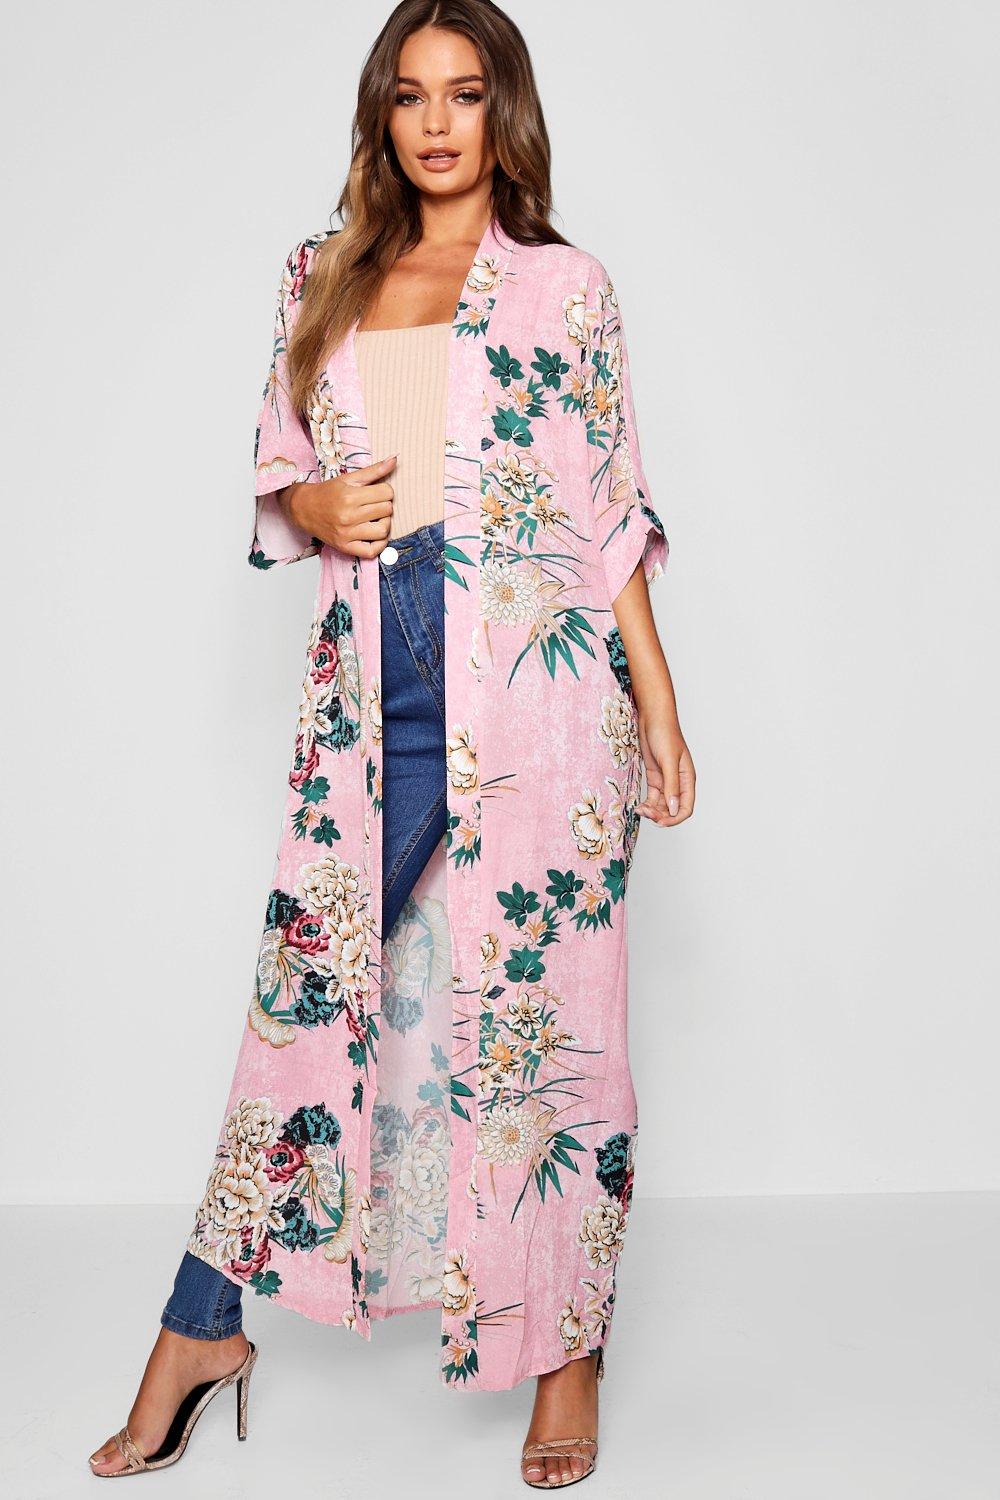 womens floral print maxi kimono - pink - s/m, pink